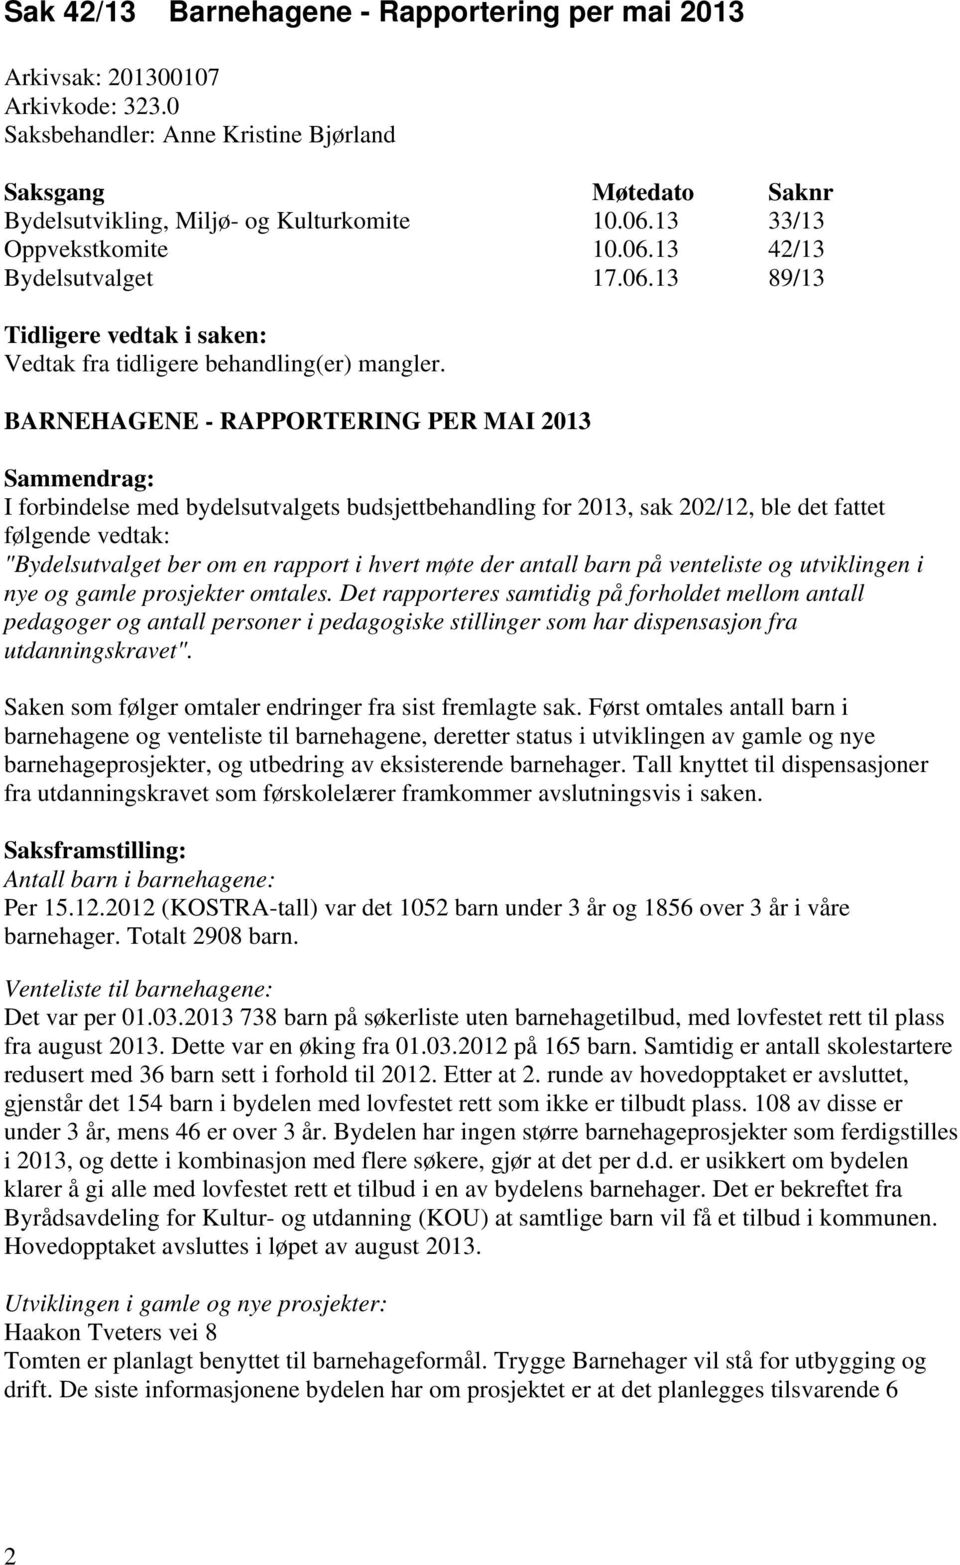 BARNEHAGENE - RAPPORTERING PER MAI 2013 Sammendrag: I forbindelse med bydelsutvalgets budsjettbehandling for 2013, sak 202/12, ble det fattet følgende vedtak: "Bydelsutvalget ber om en rapport i